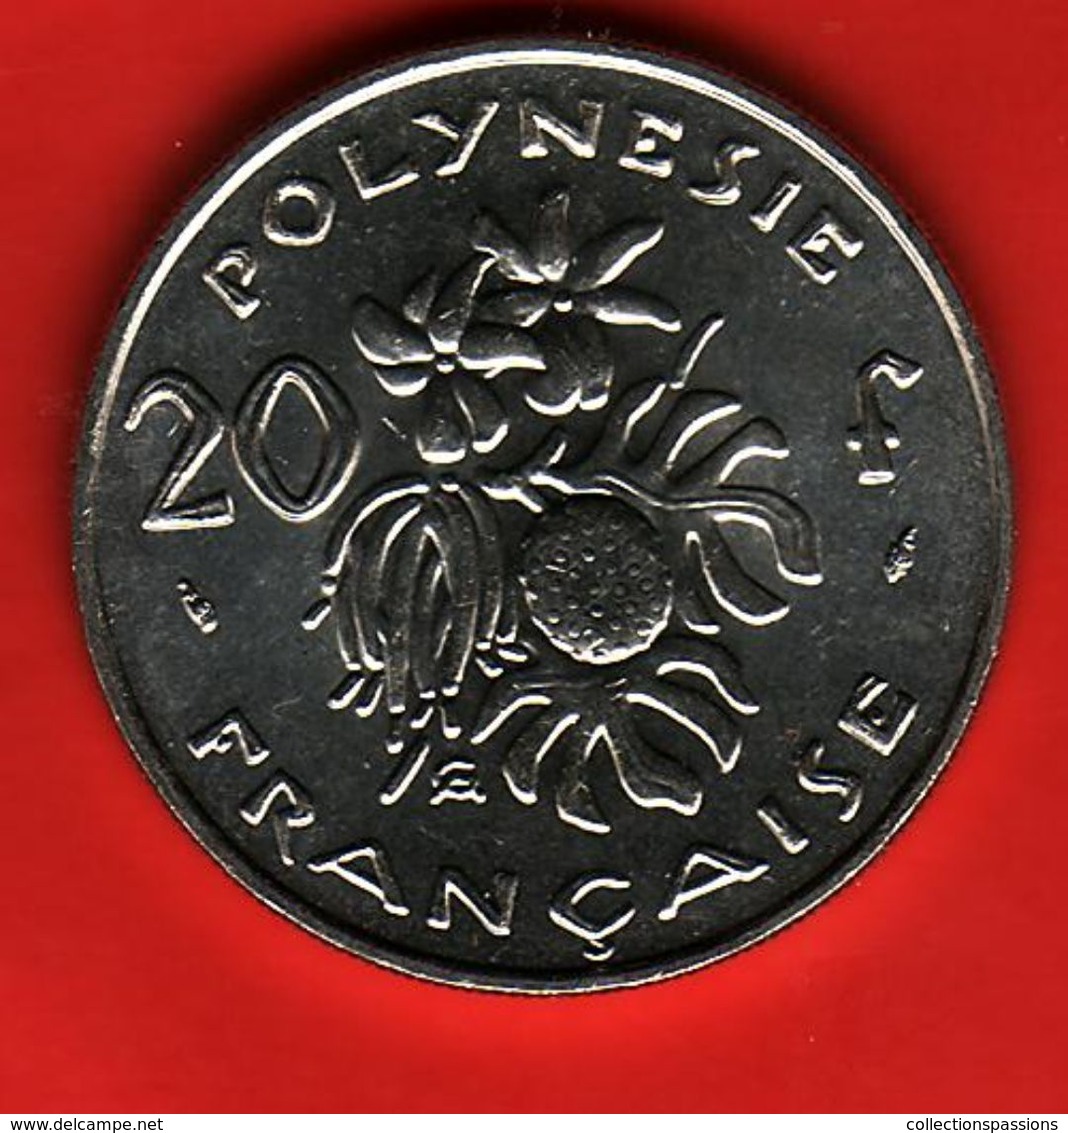 - POLYNESIE FRANCAISE - 20 Francs - 1993 - - French Polynesia